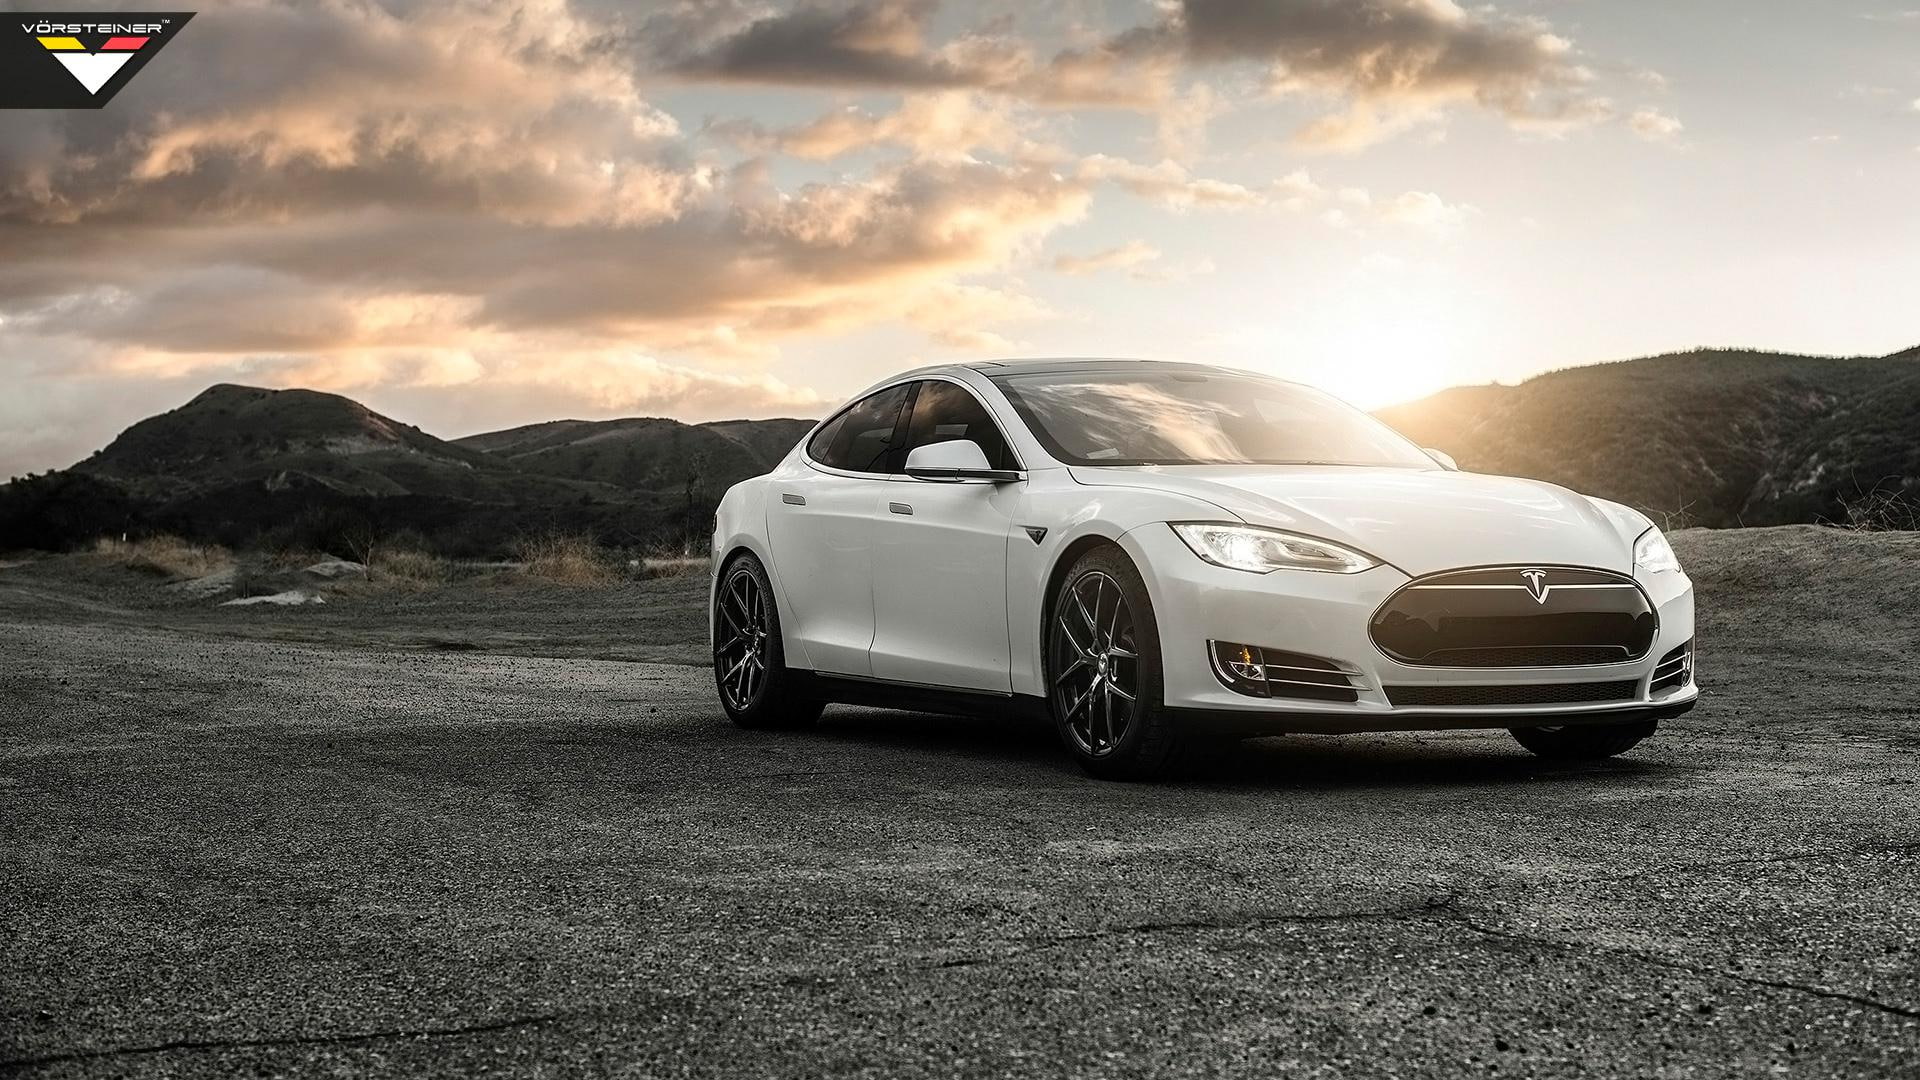 2014 Vorsteiner Tesla Model S P85, white tesla model s, cars